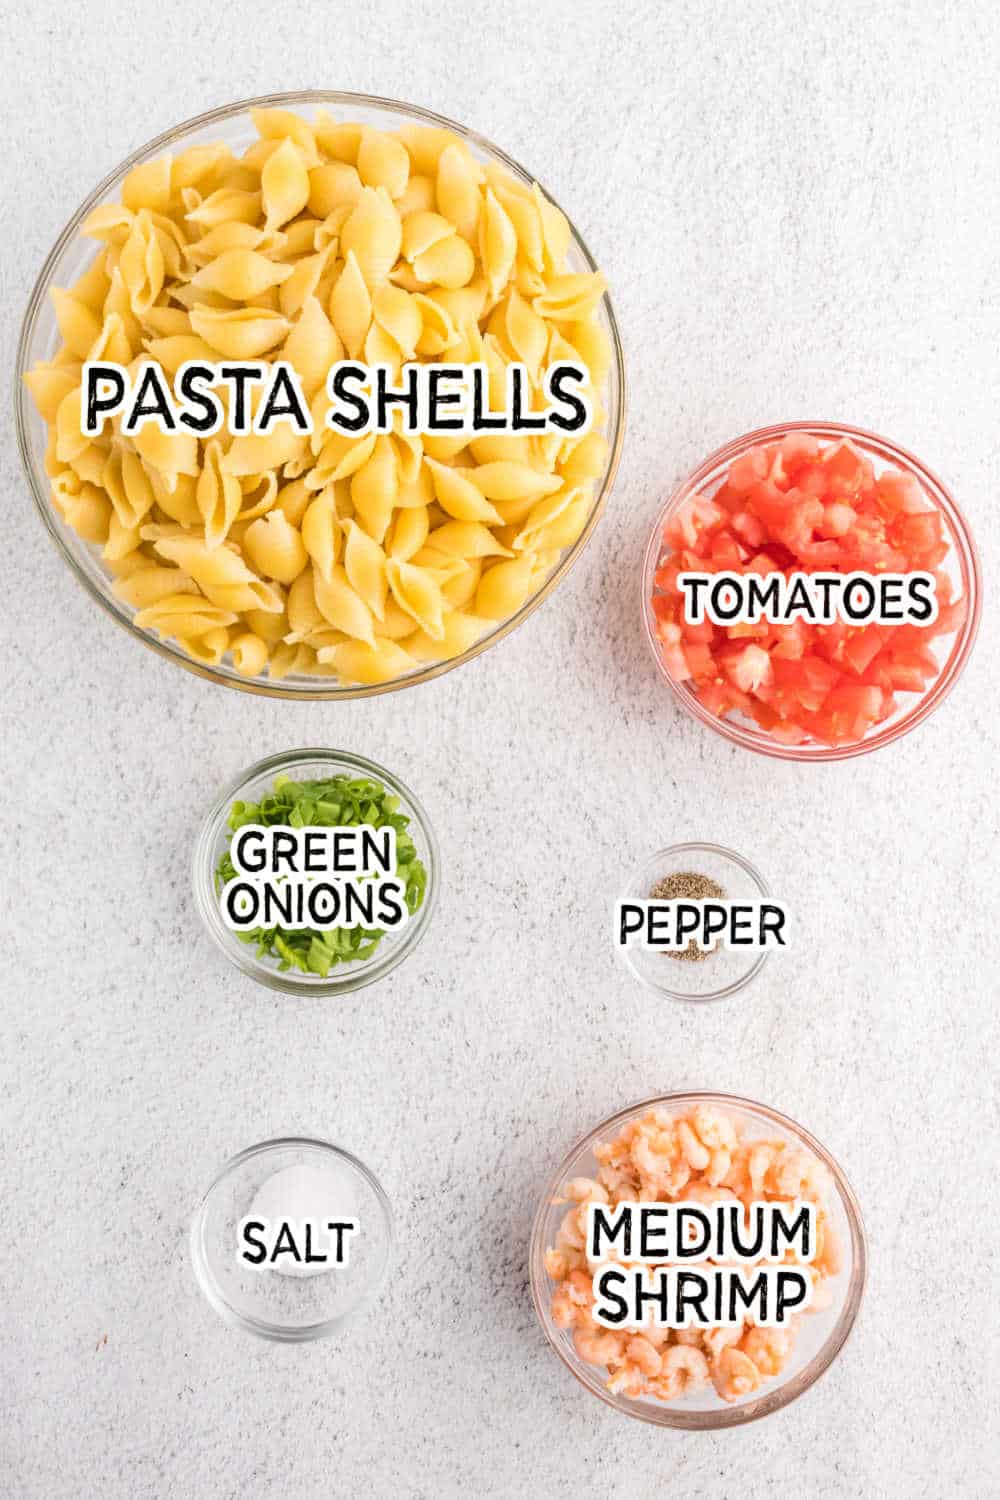 Ingredients to make shrimp pasta salad.